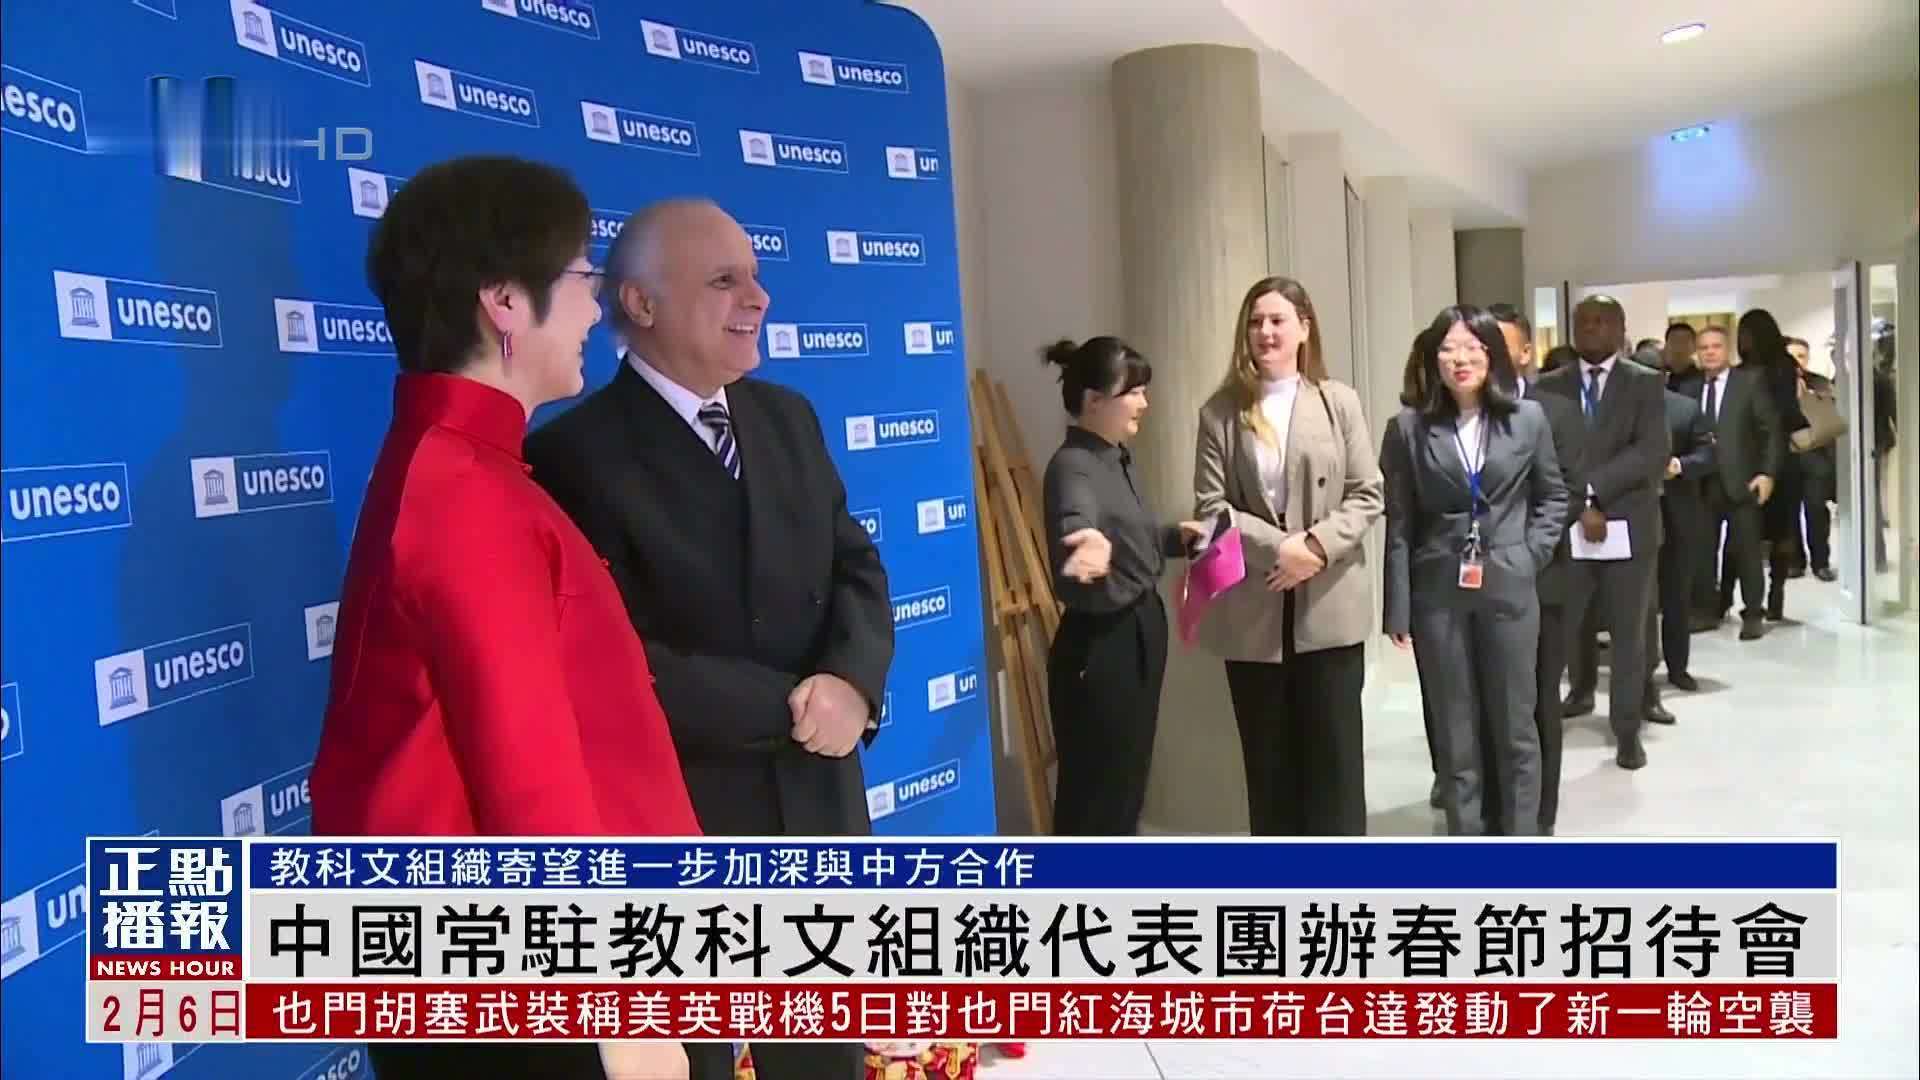 中国常驻联合国教科文组织代表团举办春节招待会